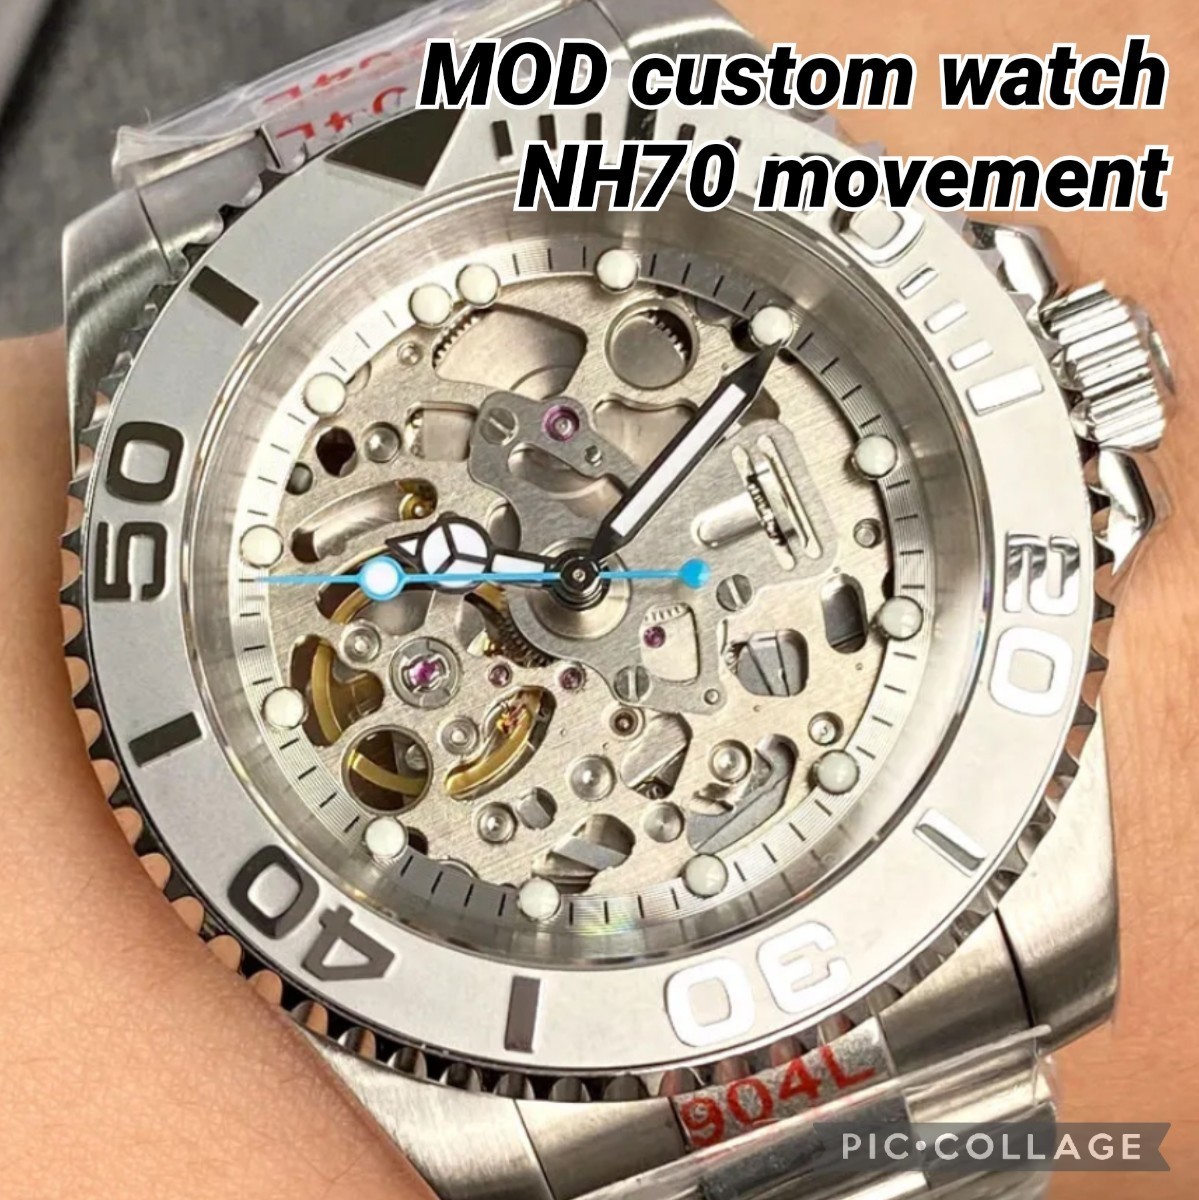 新品 NH70 MOD 高品質 自動巻 メンズ腕時計 スケルトン ステンレス ダイバーズウォッチ カスタム